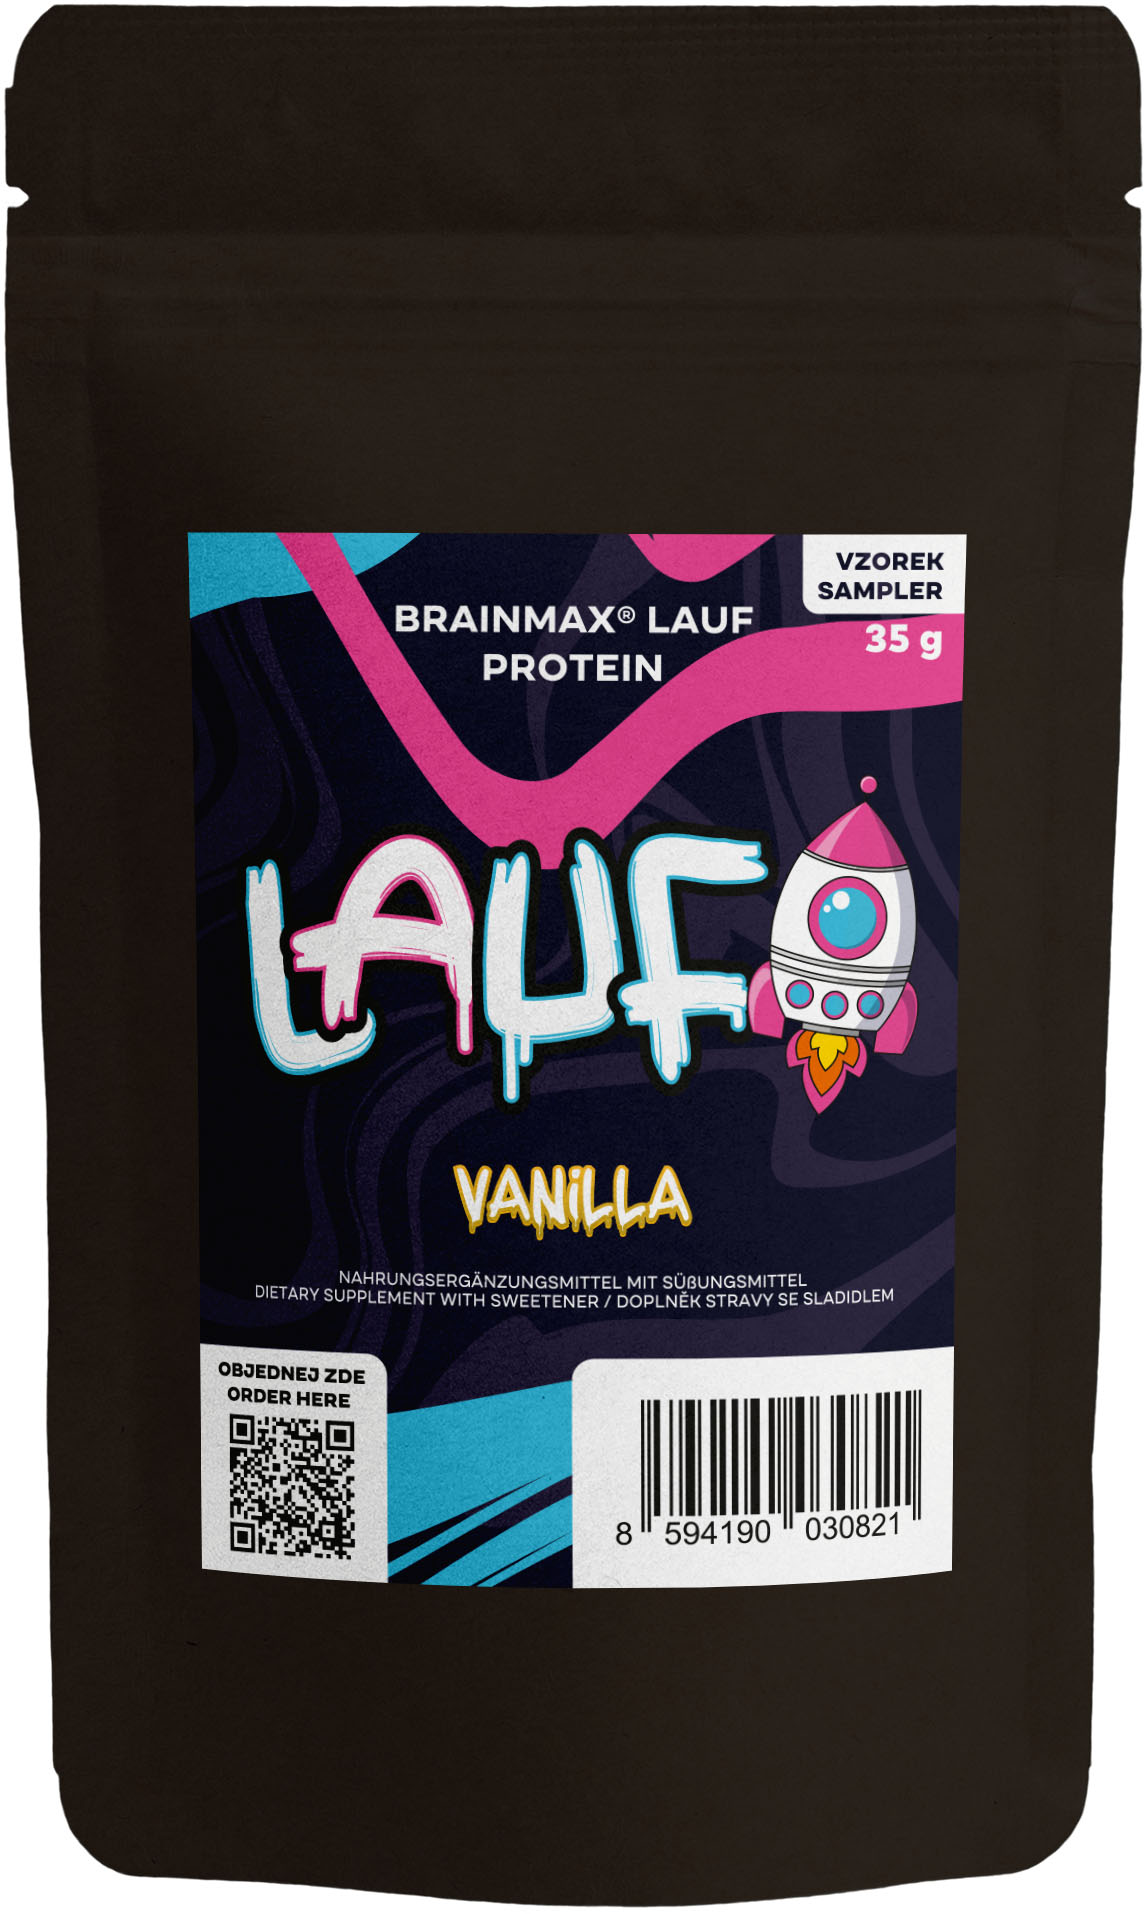 Levně BrainMax LAUF Protein, nativní syrovátkový protein, 35 g, VZOREK Příchuť: Vanilka Nativní syrovátkový protein, doplněk stravy